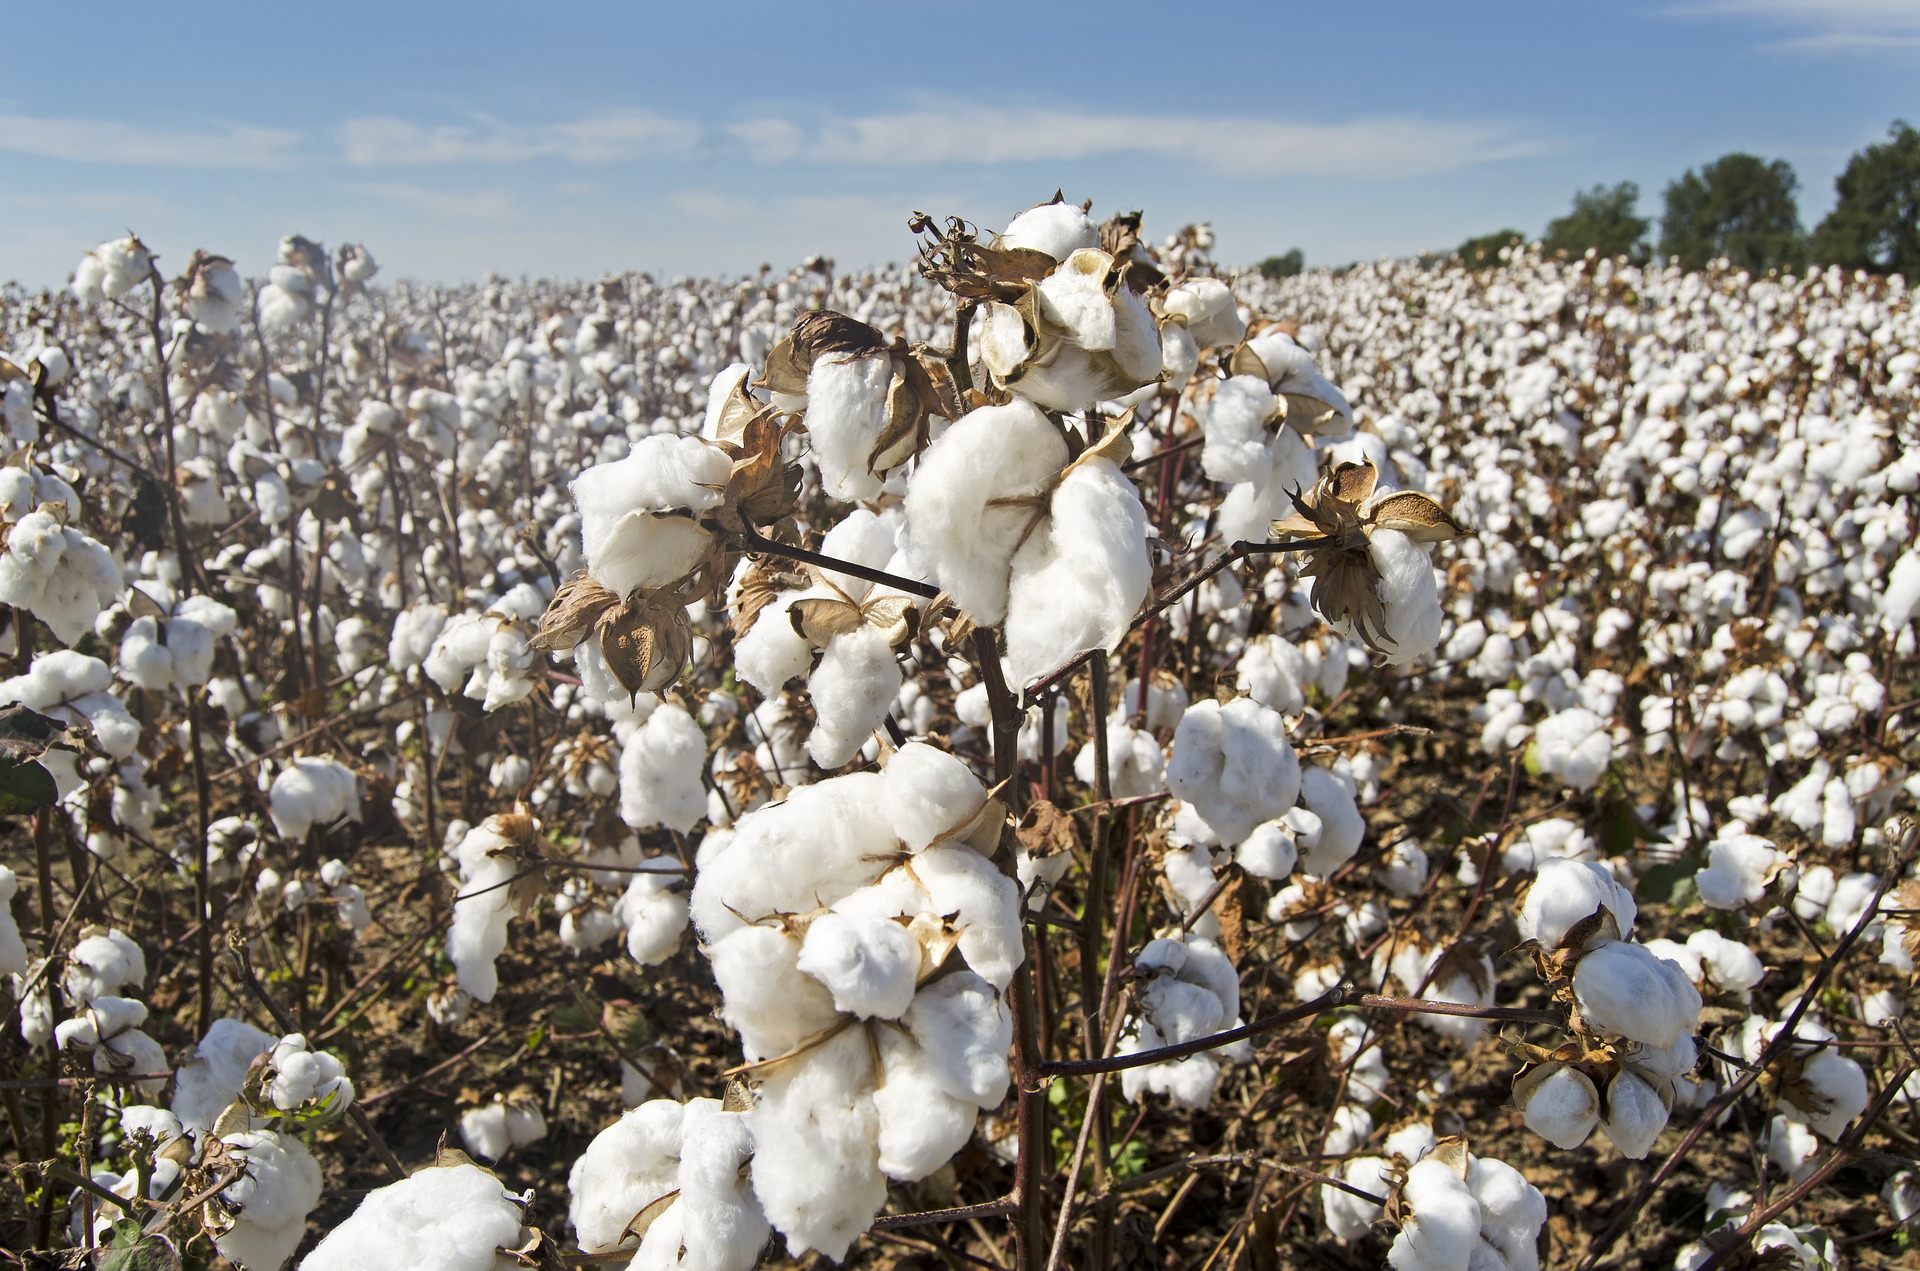 Preocupación por la seguridad alimentaria en Egipto a expensas del algodón